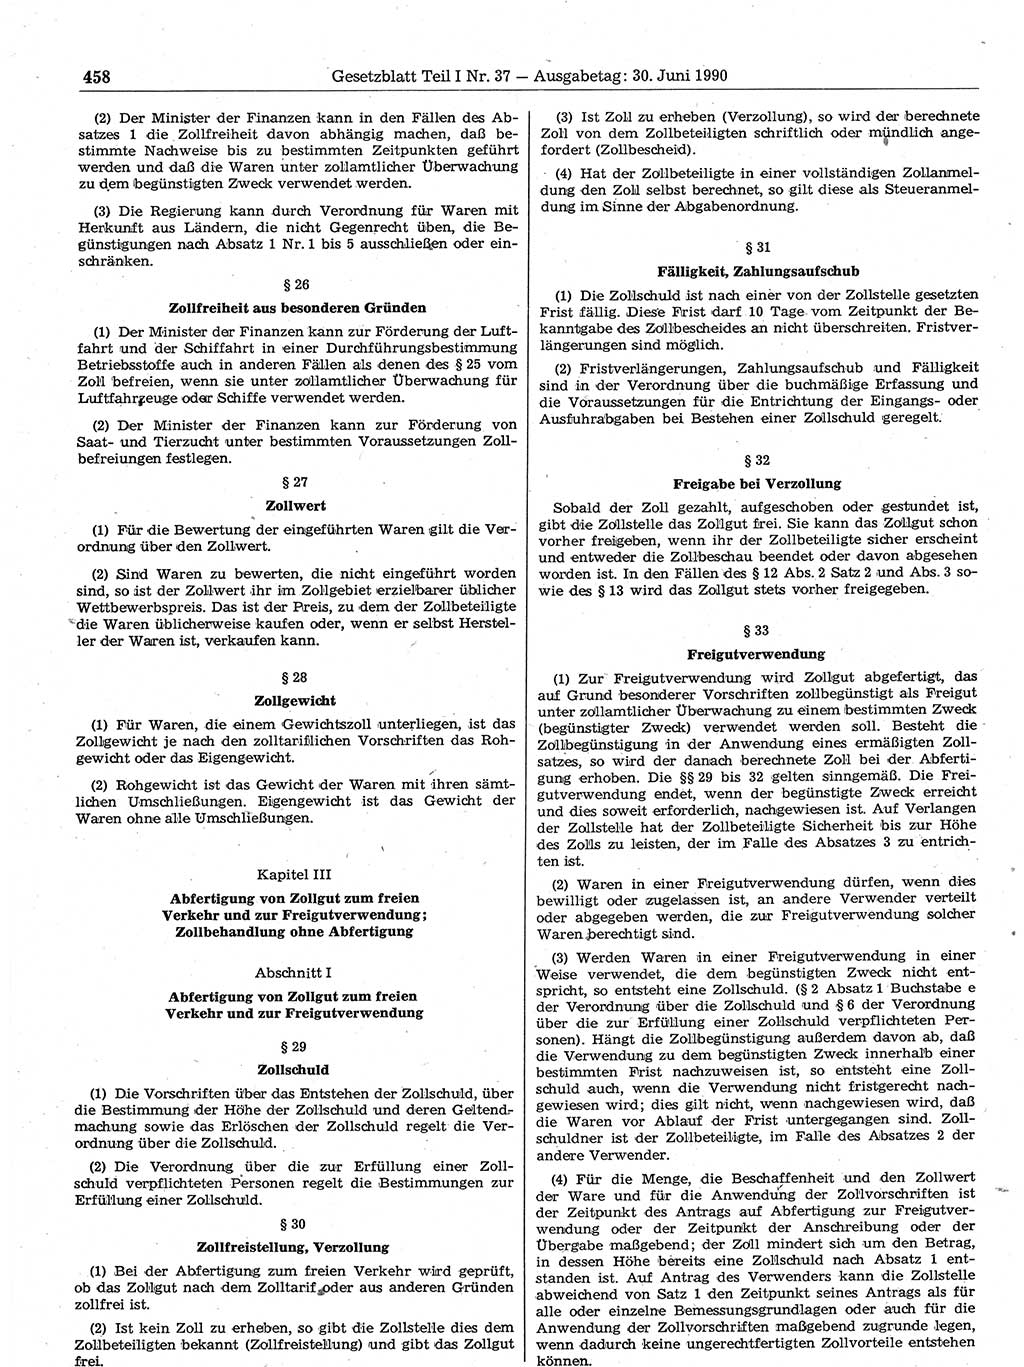 Gesetzblatt (GBl.) der Deutschen Demokratischen Republik (DDR) Teil Ⅰ 1990, Seite 458 (GBl. DDR Ⅰ 1990, S. 458)